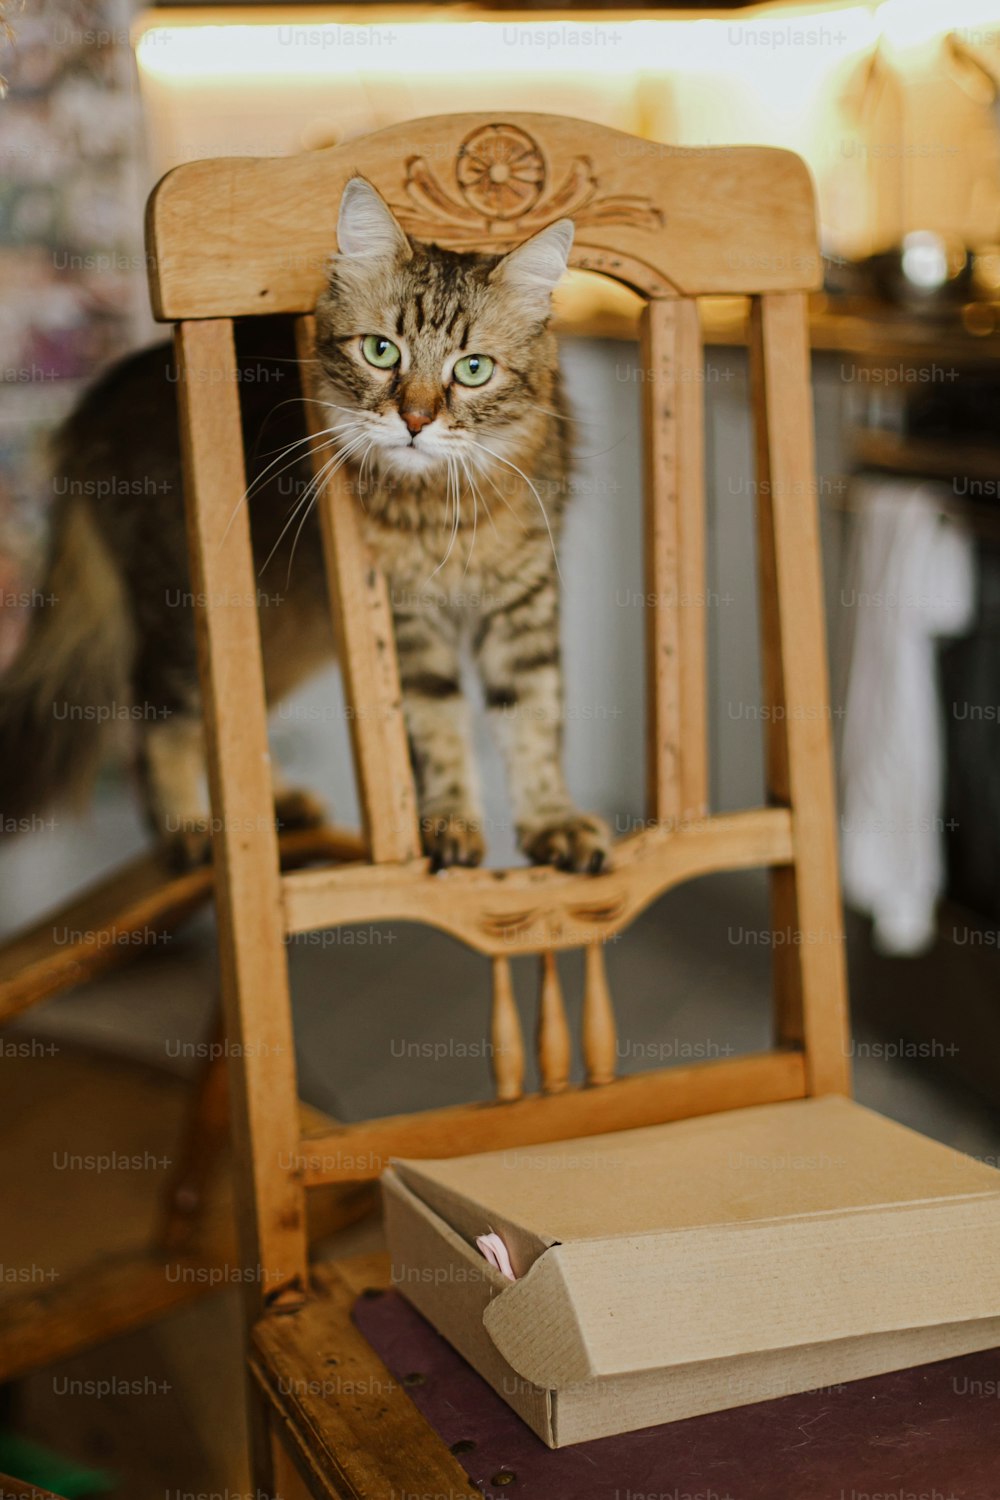 Gato tabby bonito que brinca na cadeira de madeira rústica no fundo da cozinha moderna. Adorável Maine coon com olhos verdes relaxando na cadeira retrô em casa